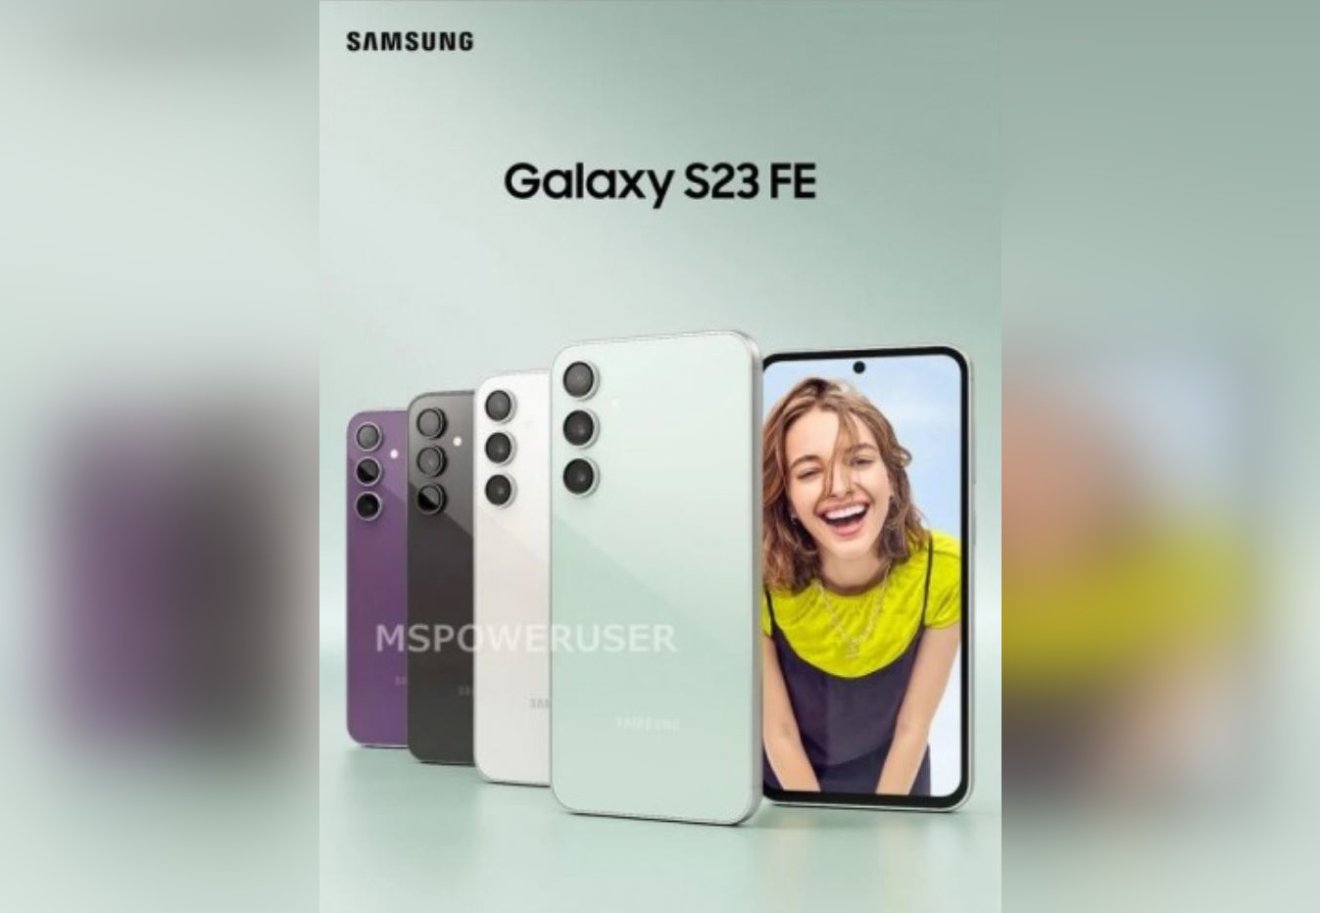 หลุดภาพโปรโมต Samsung Galaxy S23 FE ที่เผยตัวเลือกสีเครื่องถึง 4 สี